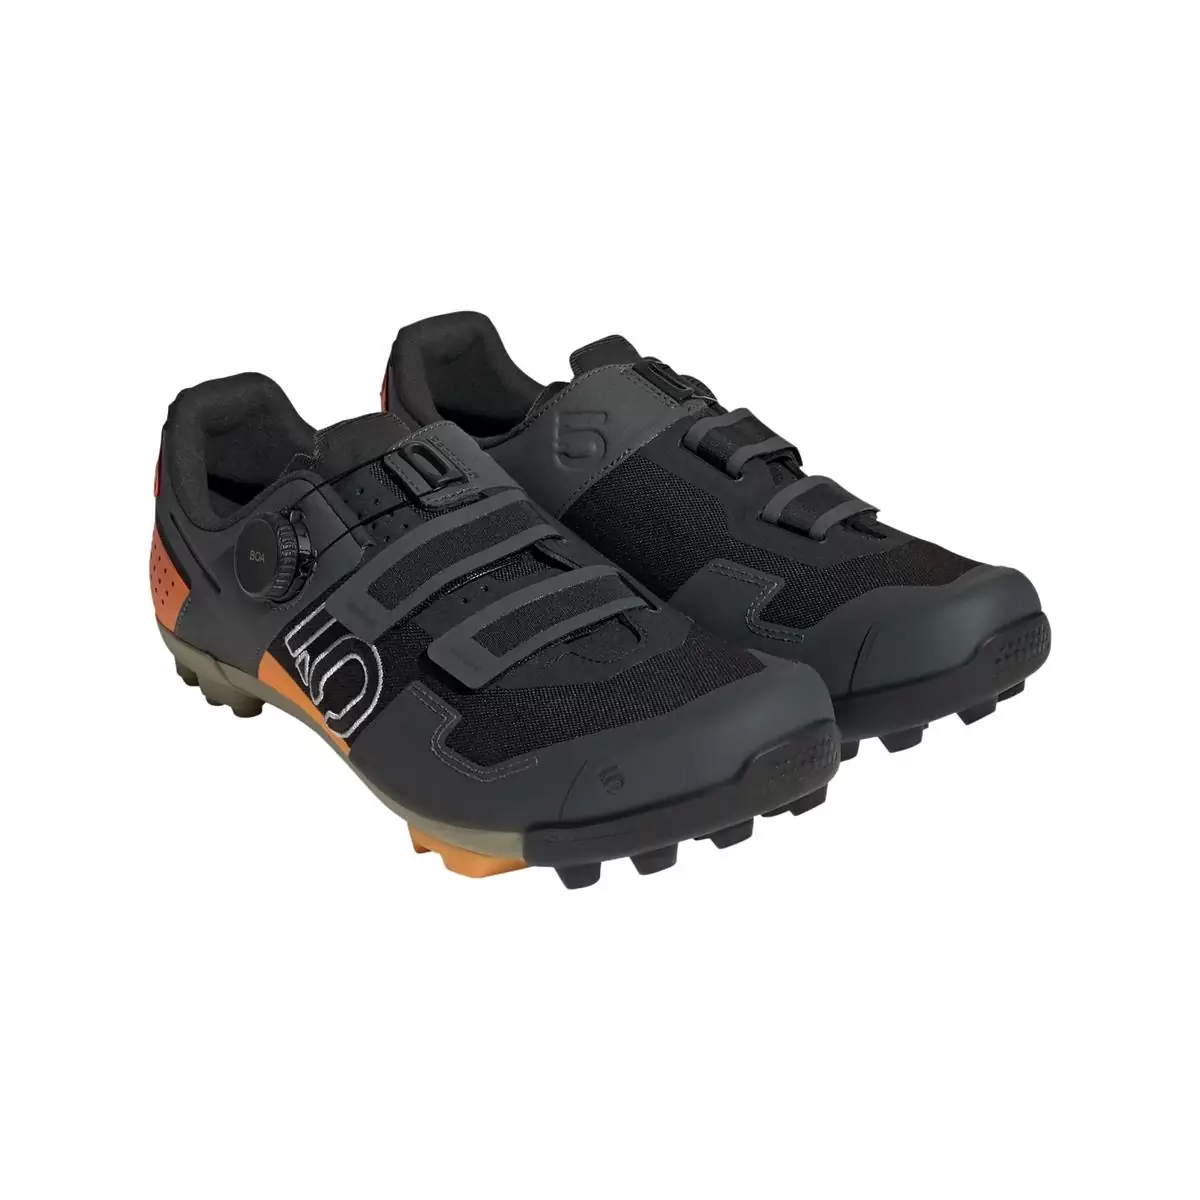 Clip 5.10 Kestrel Boa MTB Shoes Black/Orange Size 42.5 #1